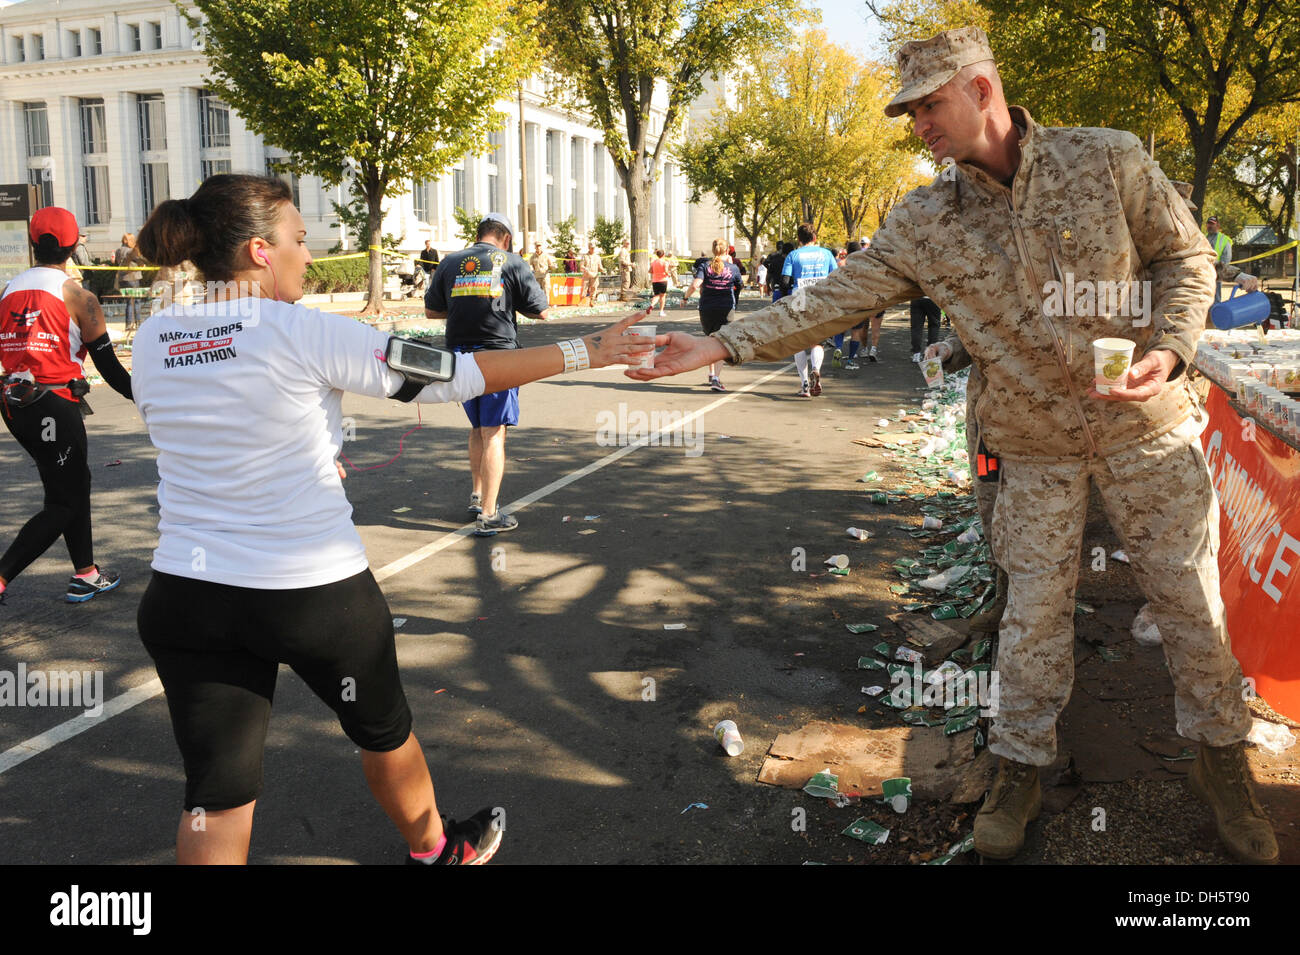 Major Timothy Smith verteilt Gatoraid an die Teilnehmer des 38. jährliche Marine Corps Marathon, Washington D.C., 27. Oktober 2013. Major Smith ist die Bekämpfung der Entwicklung Kompaniechef, Sitz und Service Battalion, Marine Corps Base Quantico, Virginia. Stockfoto